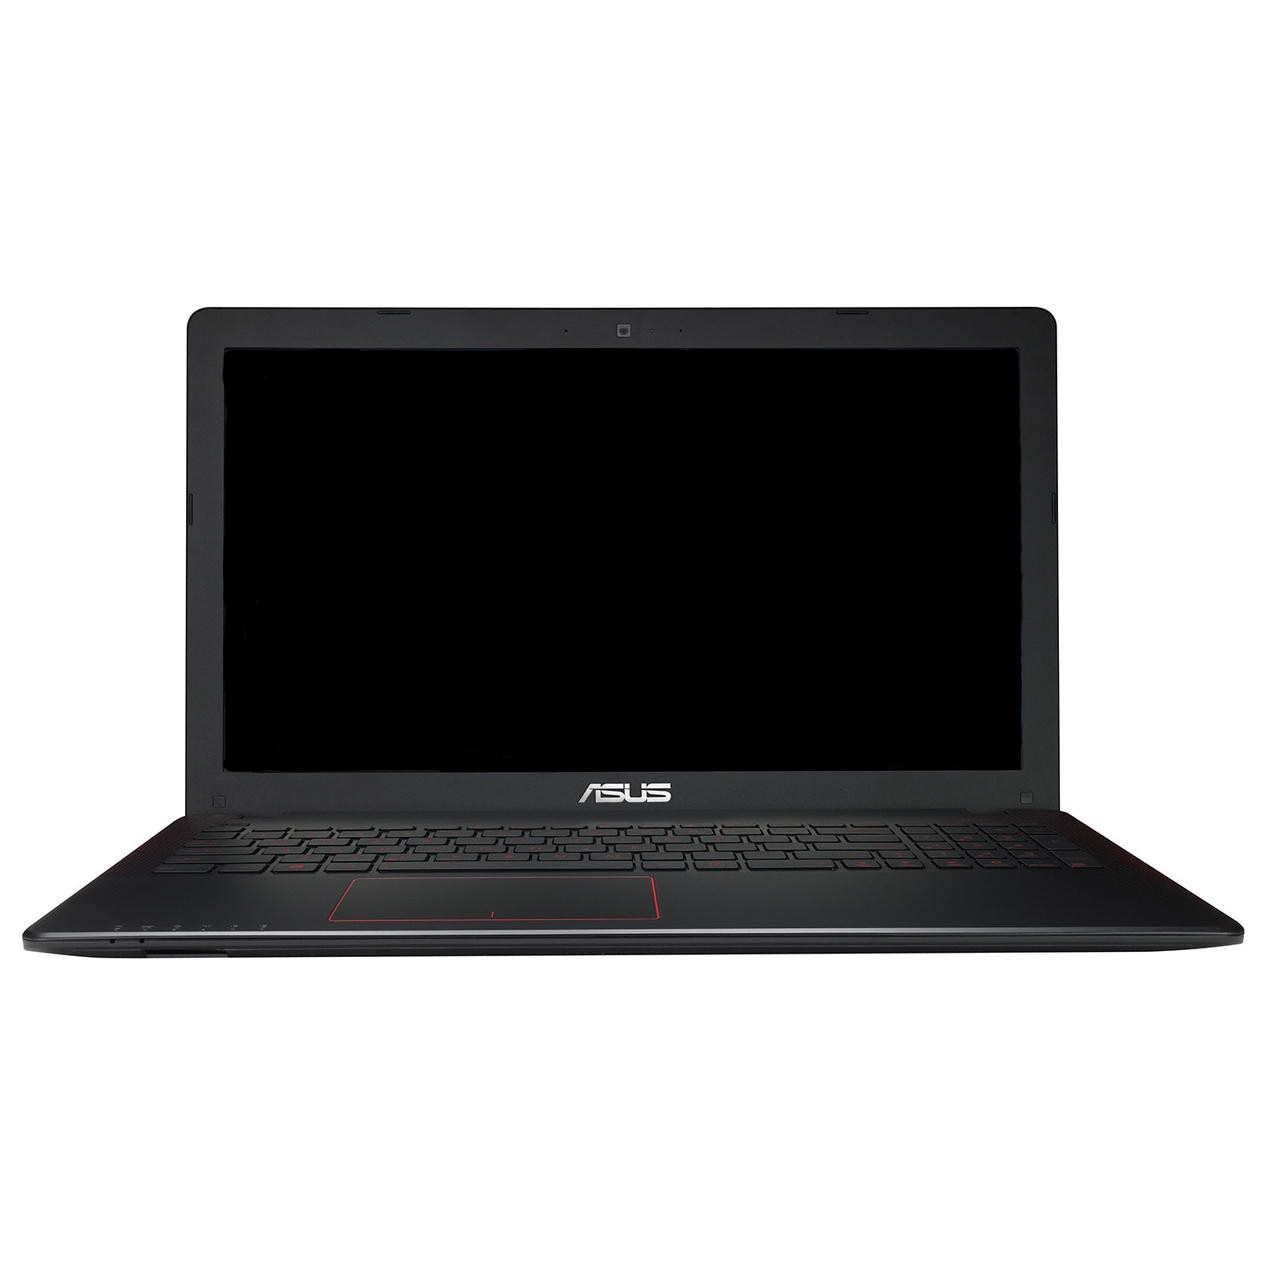 Лаптоп ASUS K550VX-DM026D